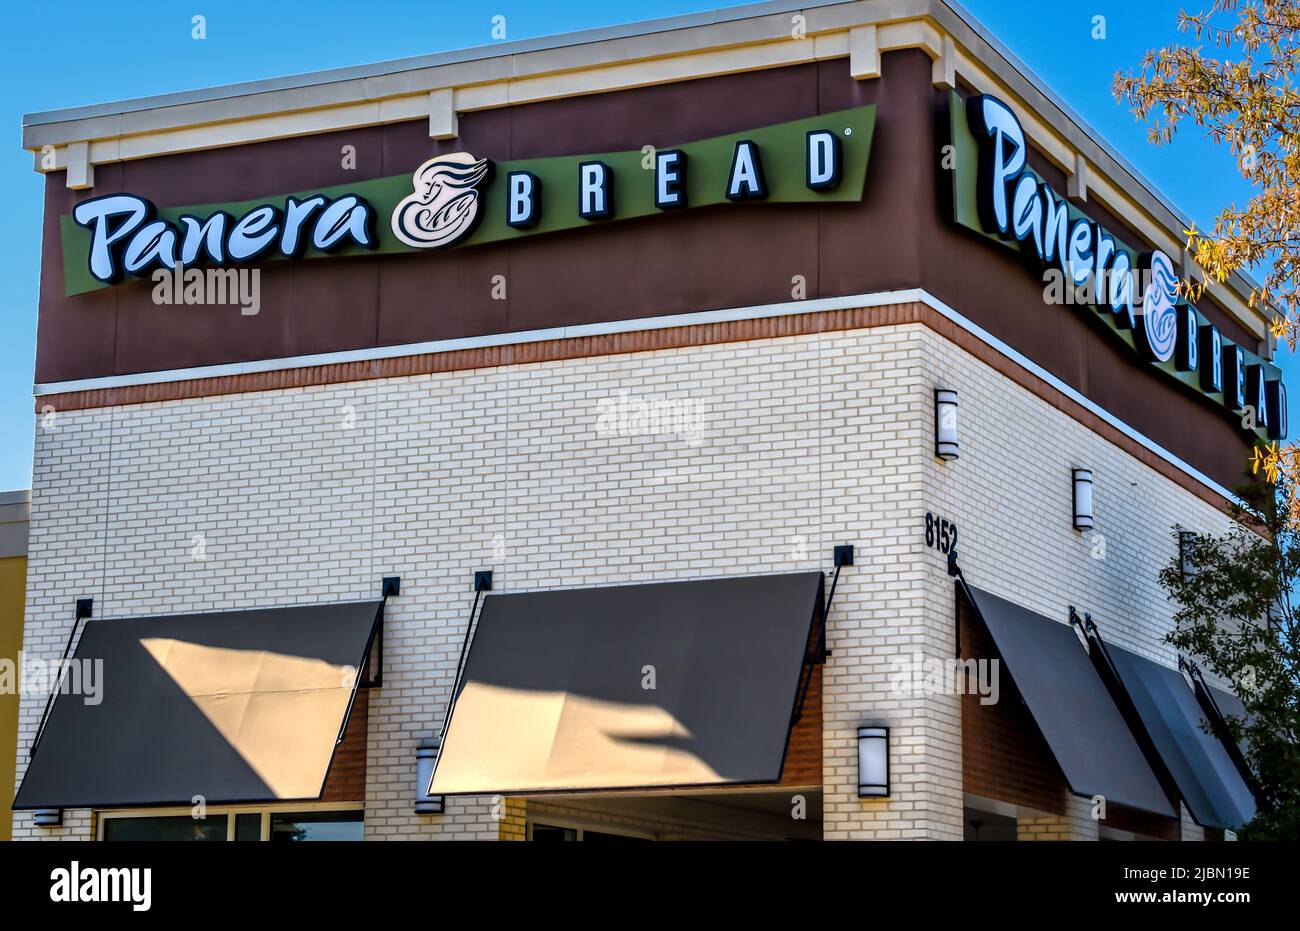 Panera Bread ristorante e caffè facciata esterna marchio e logo in lettere bianche su verde e marrone in una giornata di sole con cielo blu. Foto Stock